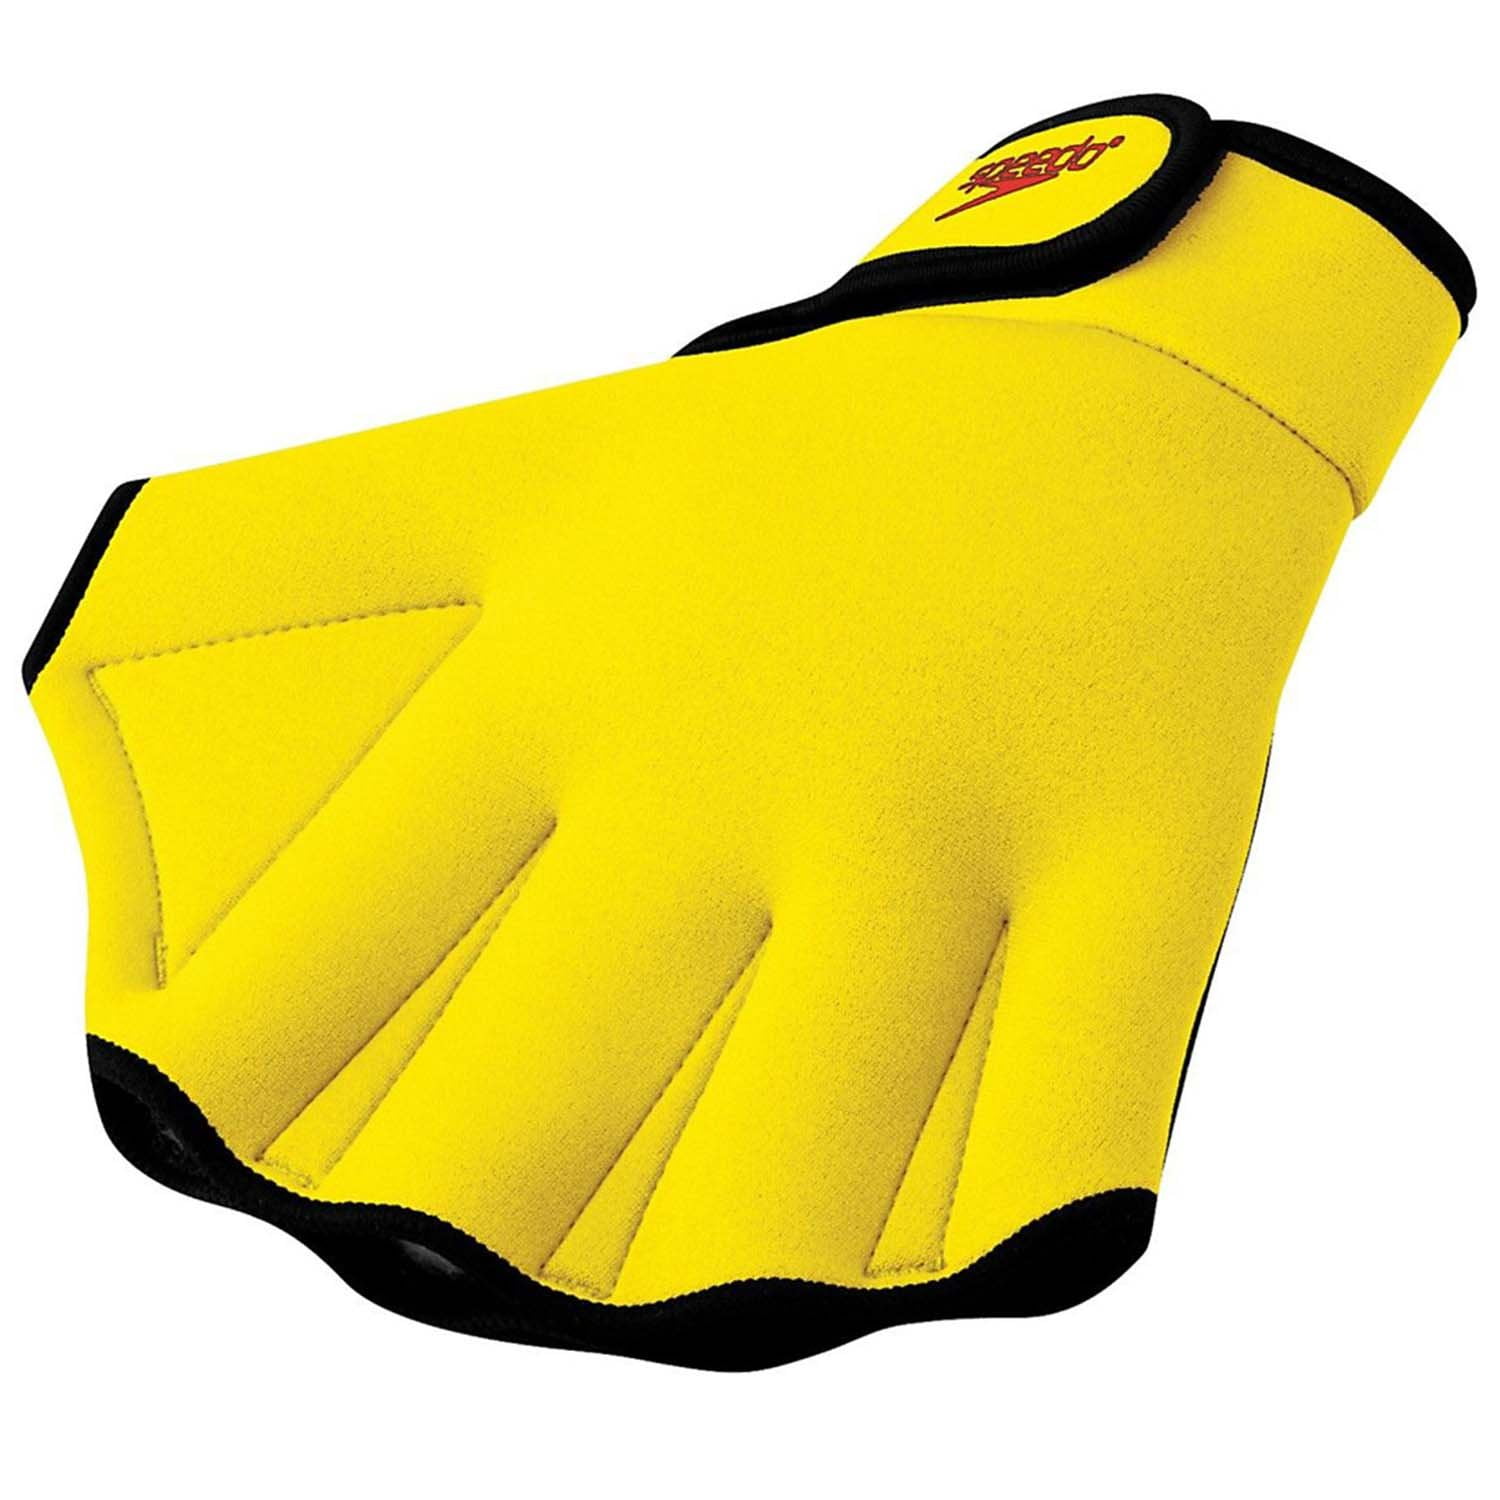 2020 Speedo Aqua Fitness Gloves 